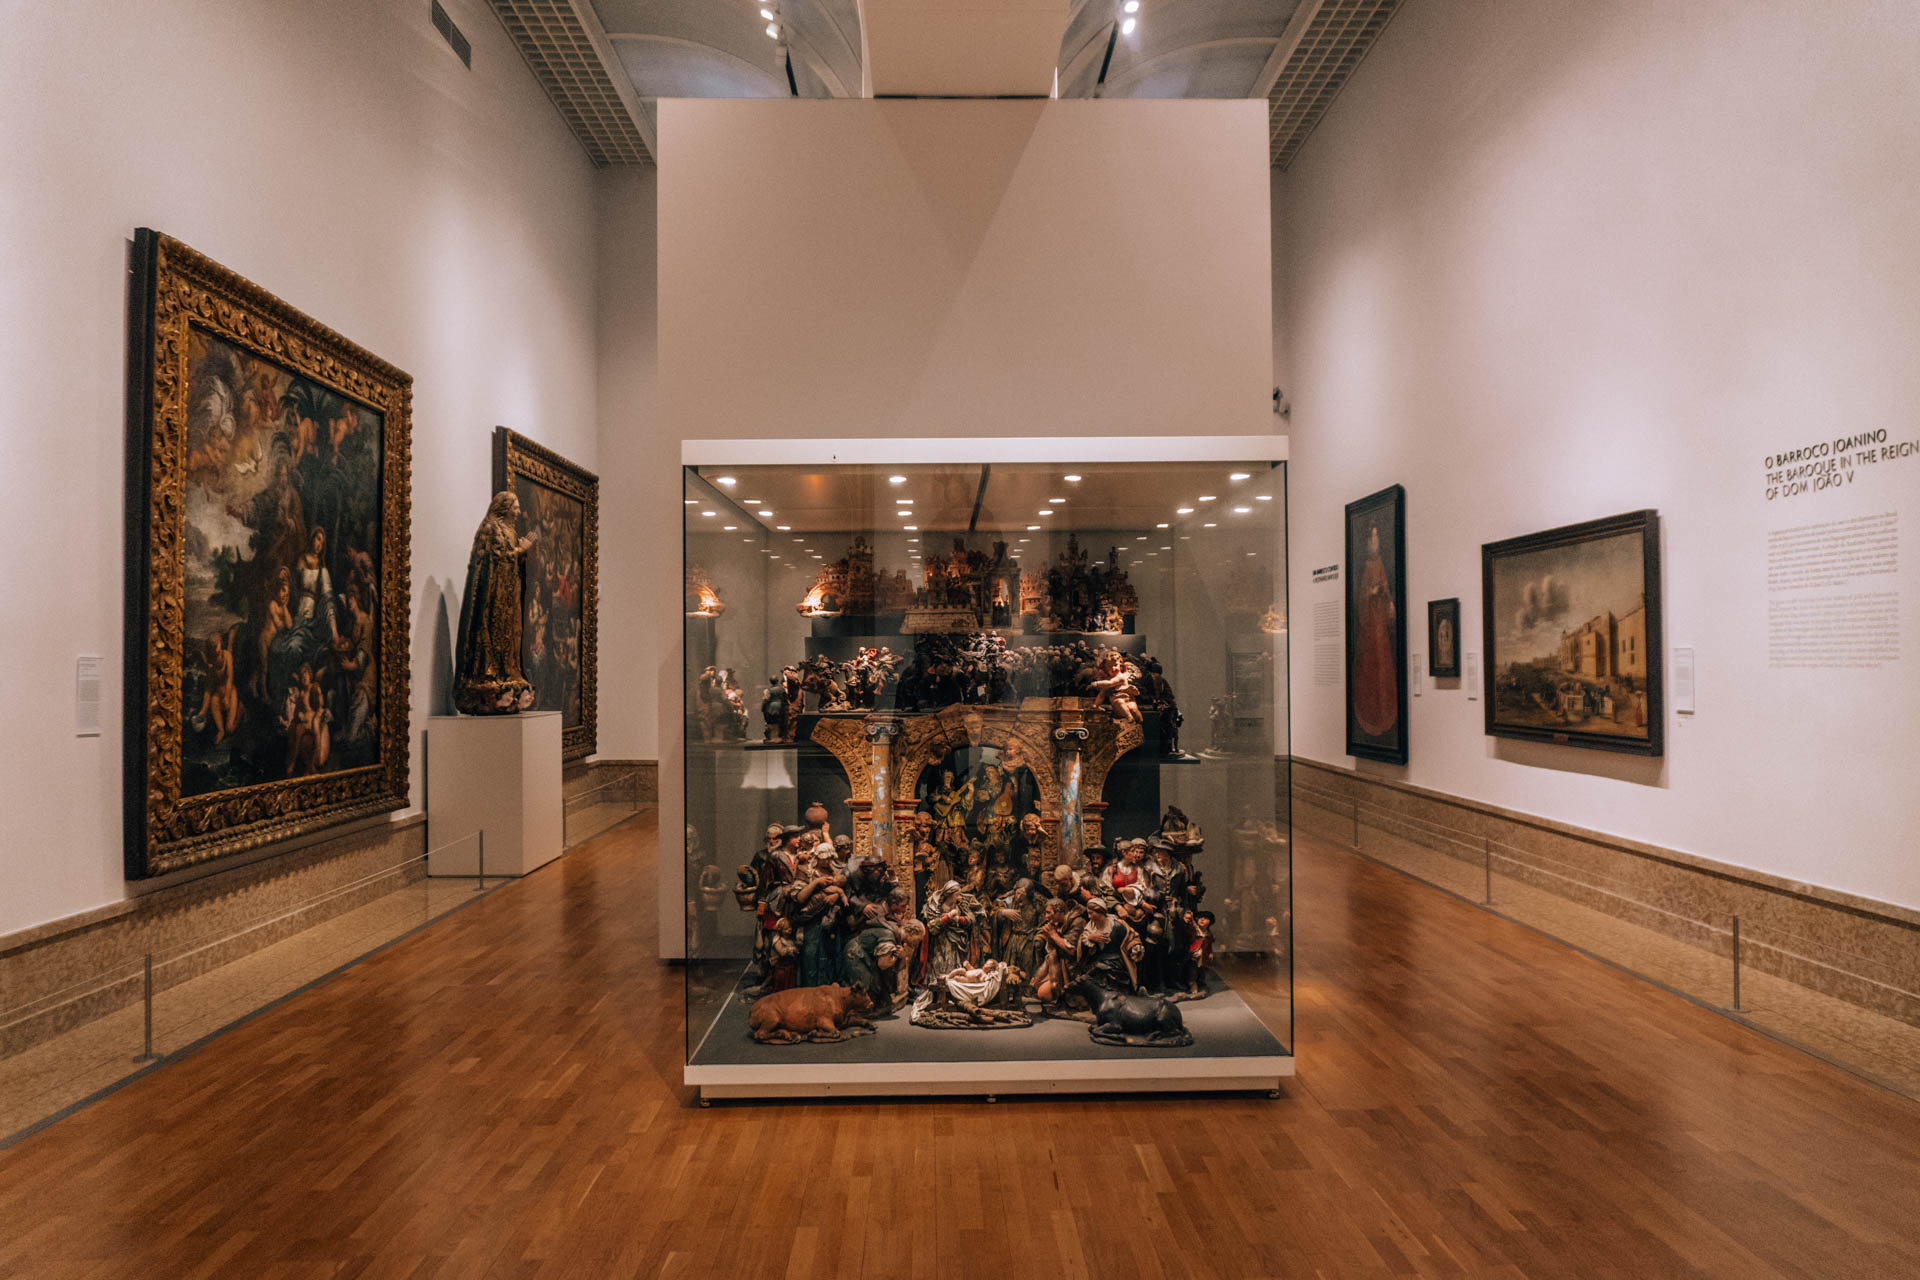 Muzeum Arte aNTIGA | aTRAKCJE W lIZBONIE